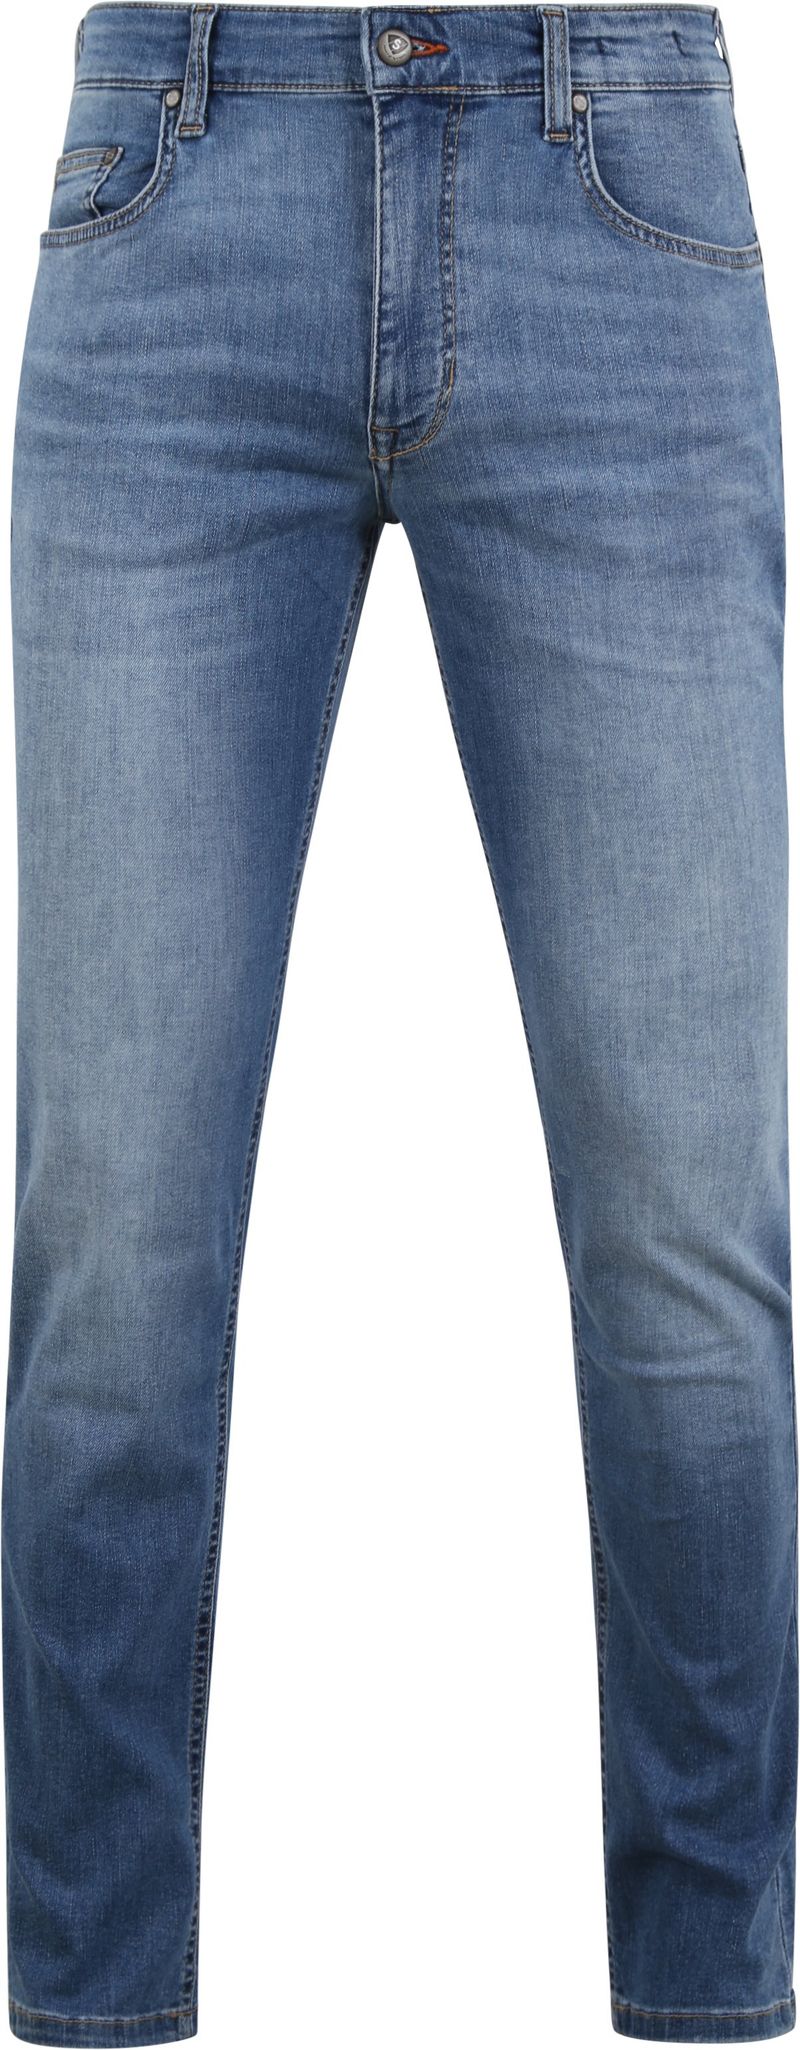 Suitable Jeans Blau - Größe W 33 - L 32 von Suitable